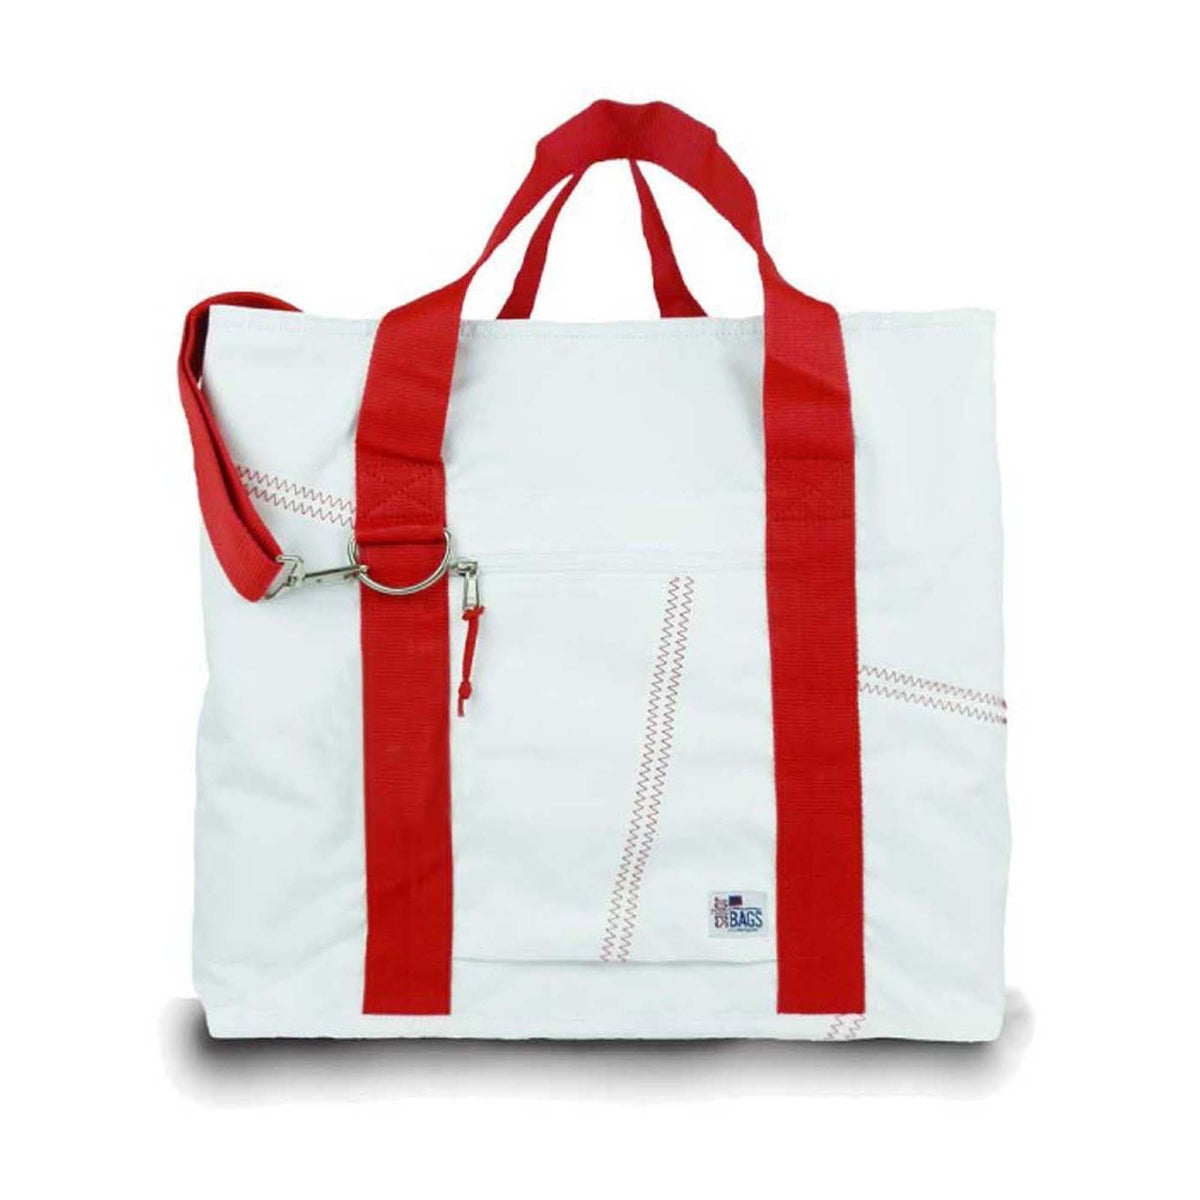 SailorBags Newport X-Large Tote Bag